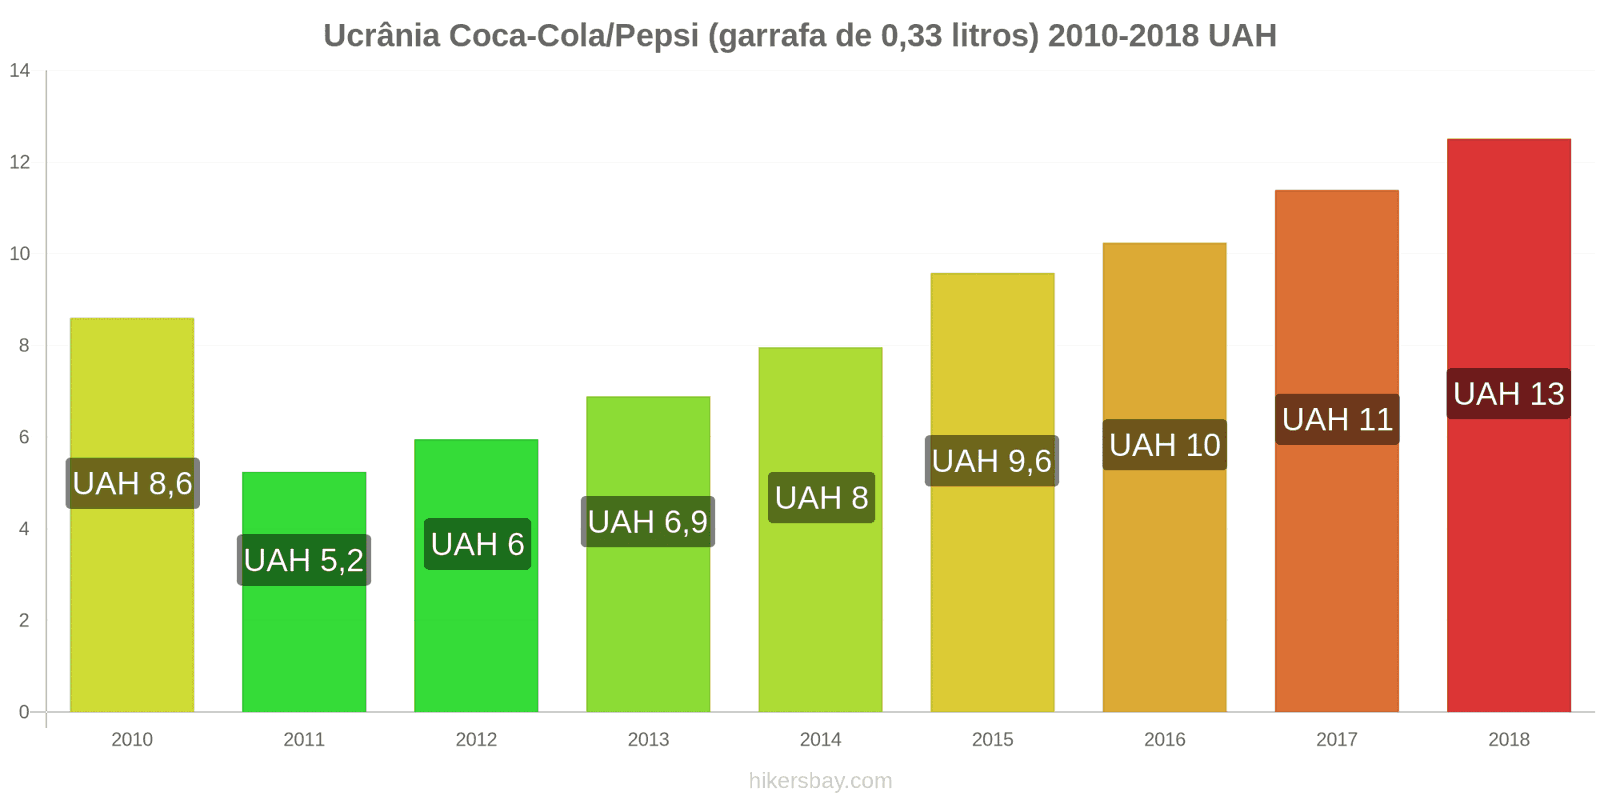 Ucrânia mudanças de preços Coca-Cola/Pepsi (garrafa de 0.33 litros) hikersbay.com